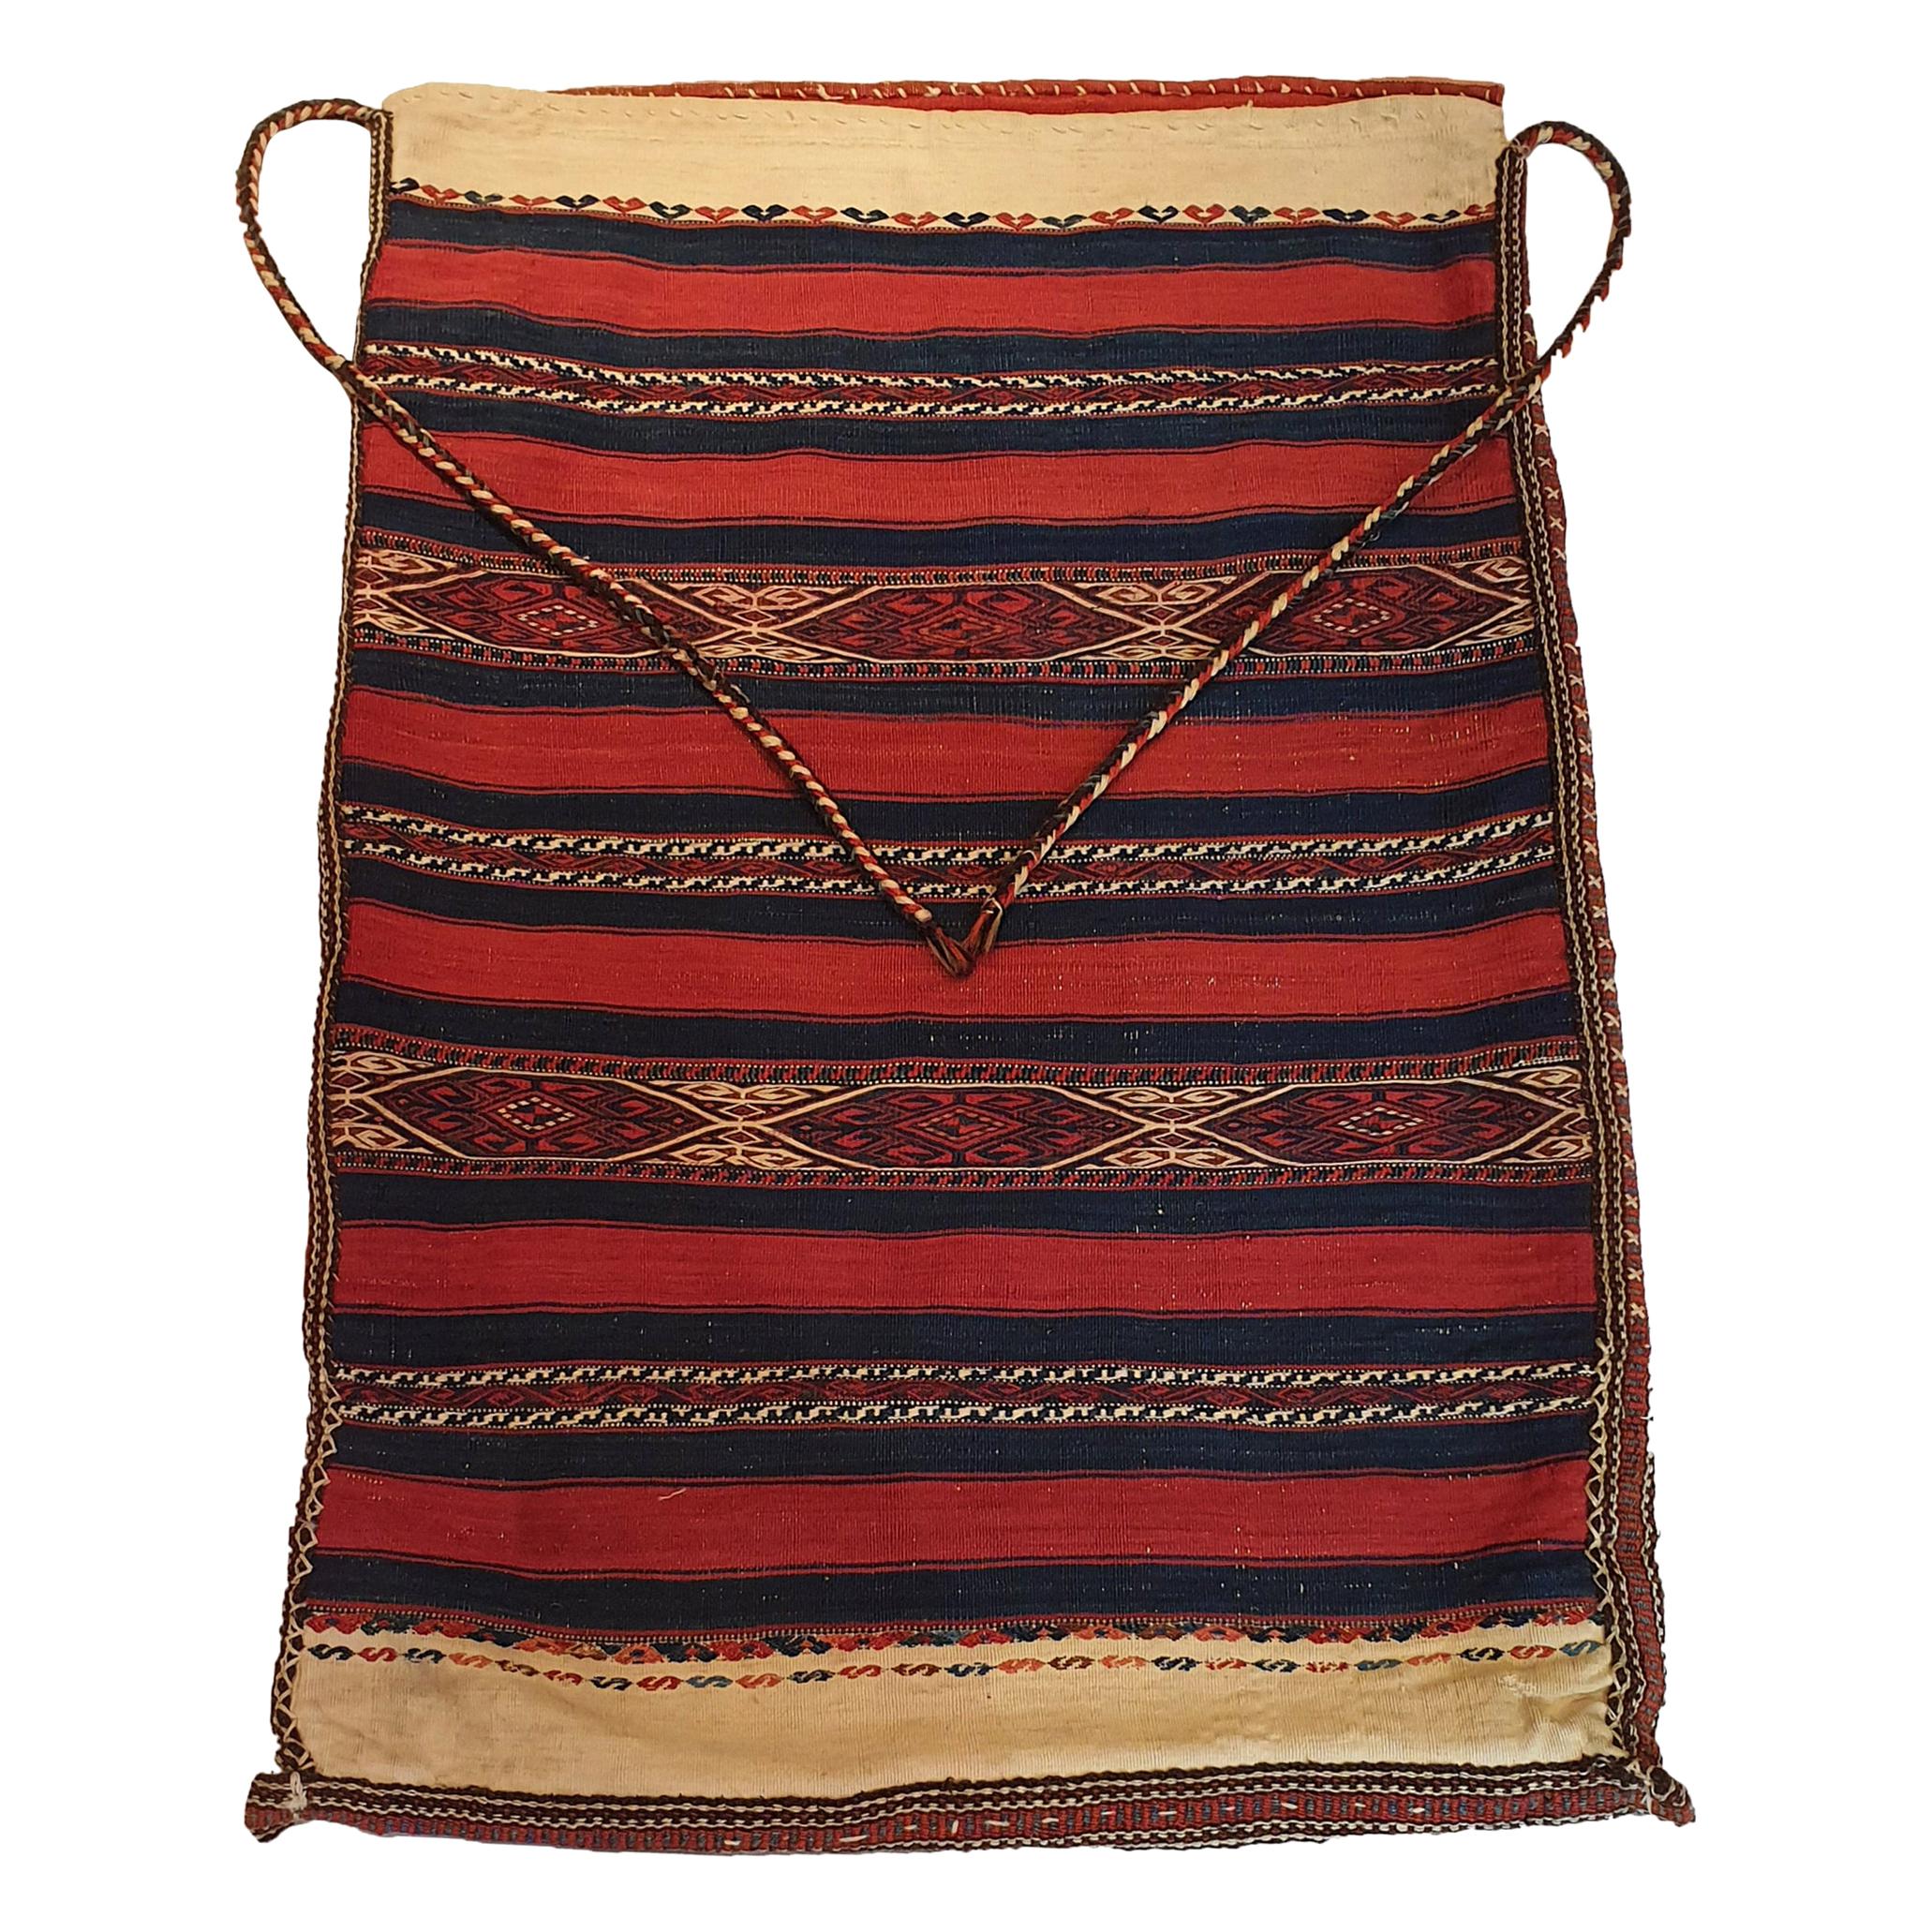 692 - Außergewöhnliche kaukasische Tasche aus dem 19. Jahrhundert